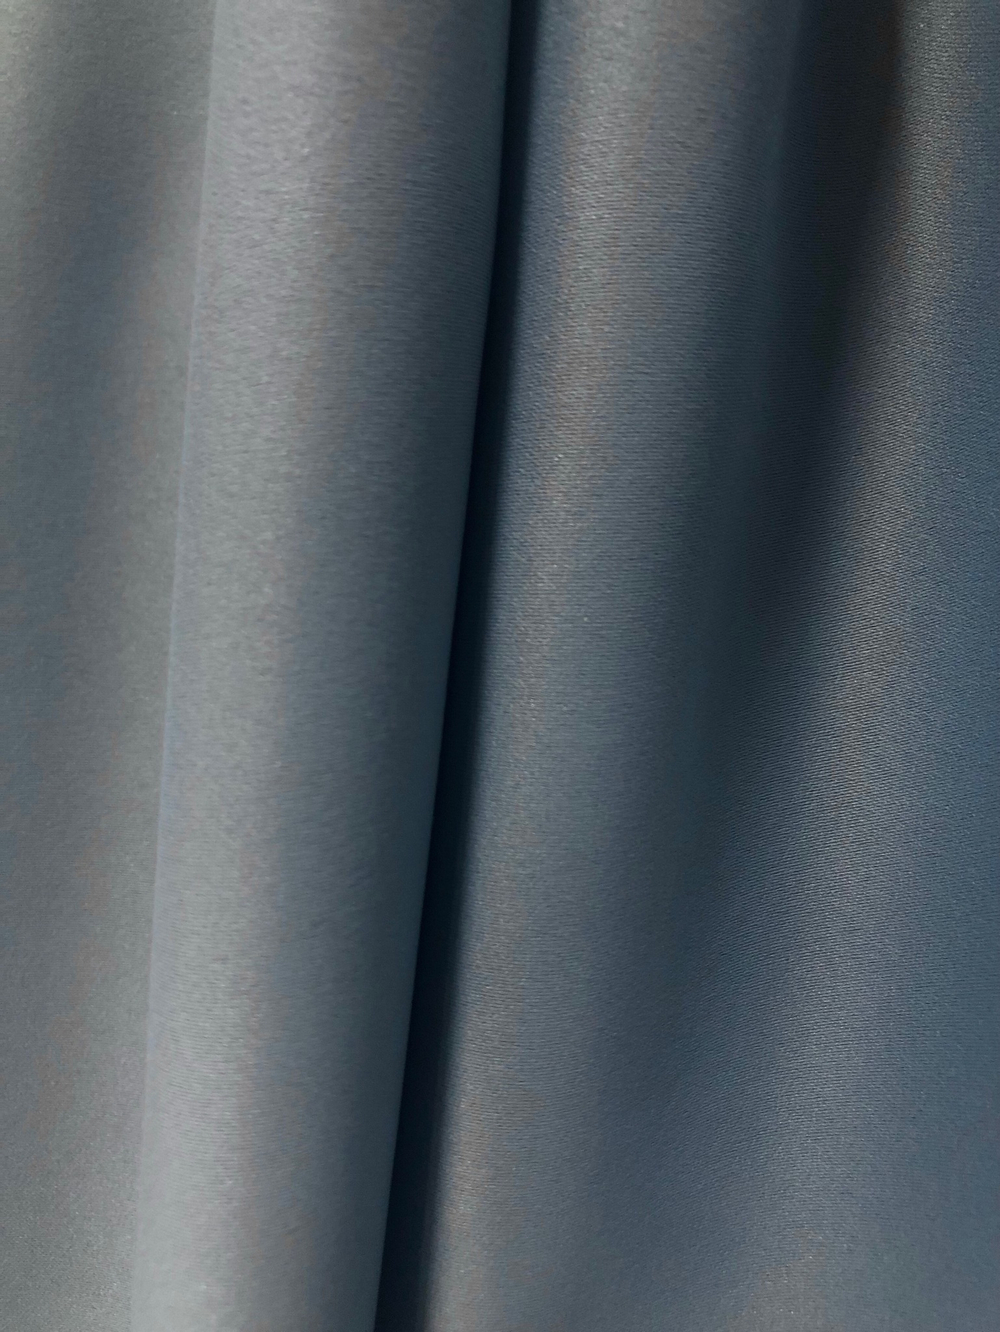 Ткань портьерная блэкаут, матовый, цвет серо-голубой, артикул 327674